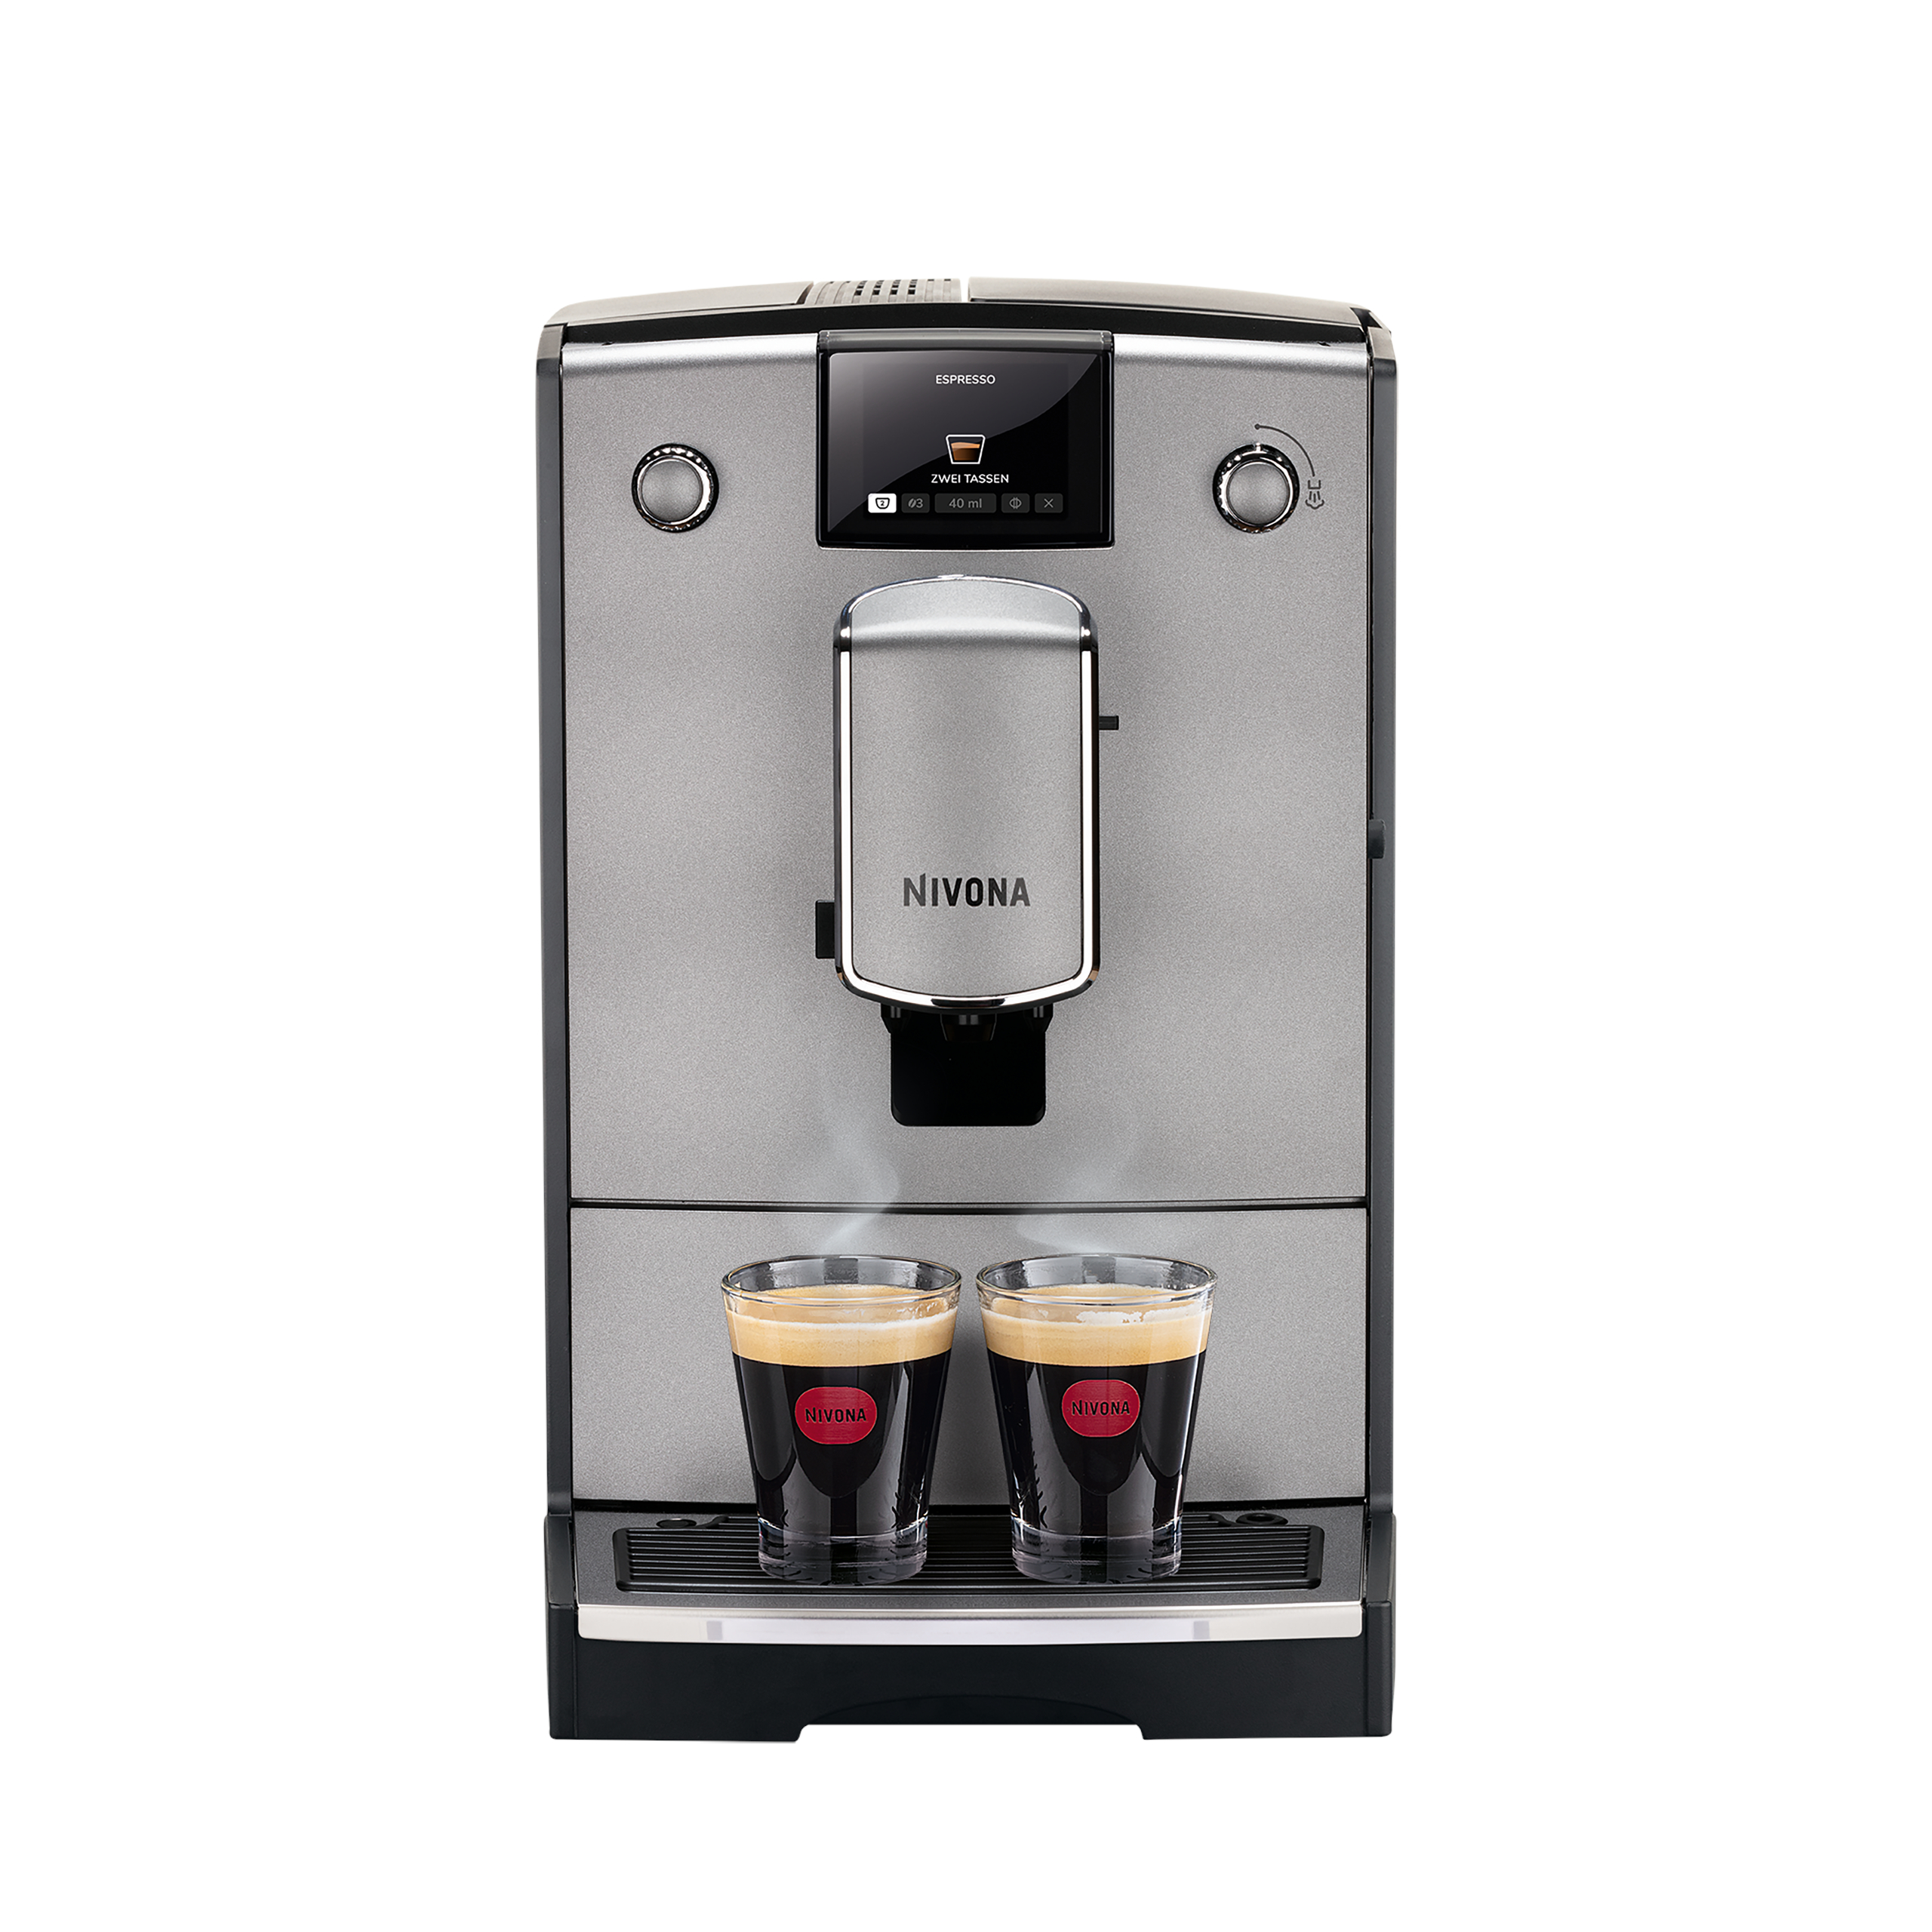 NICR 695  Cafe Romatica fully automatic espresso machine